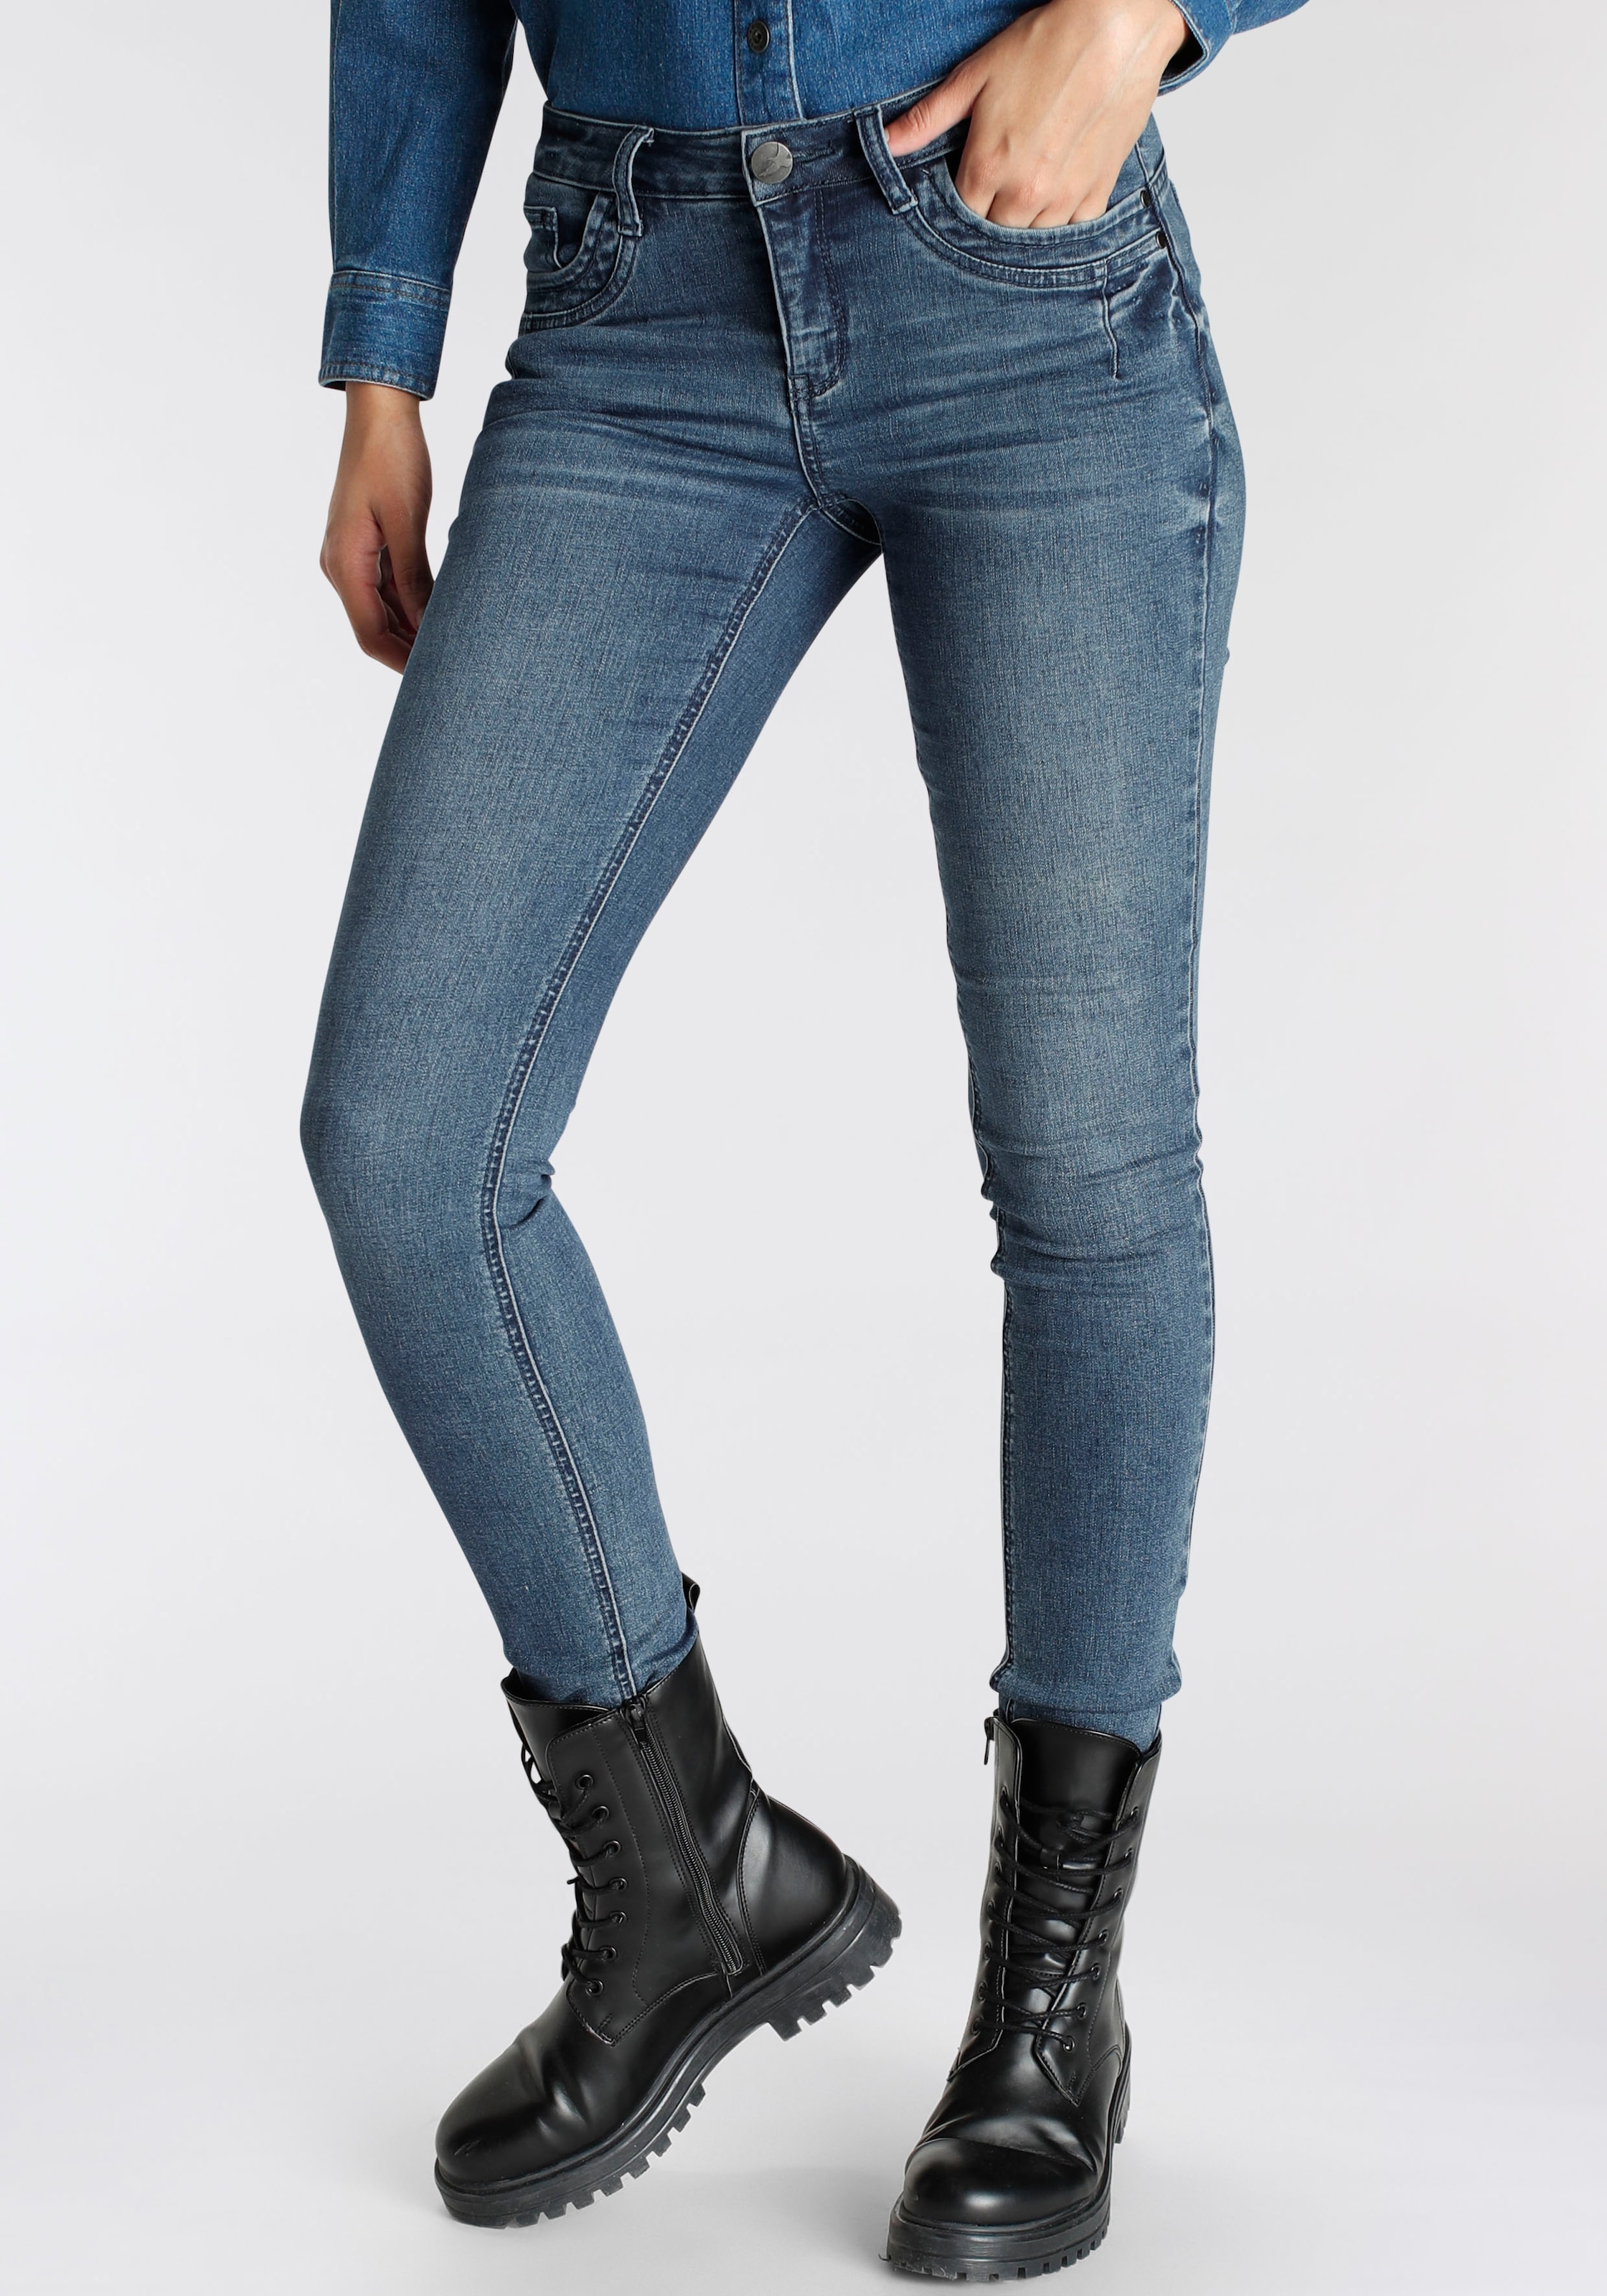 | Jeans Angebote Outlet Arizona BAUR %% SALE günstige &